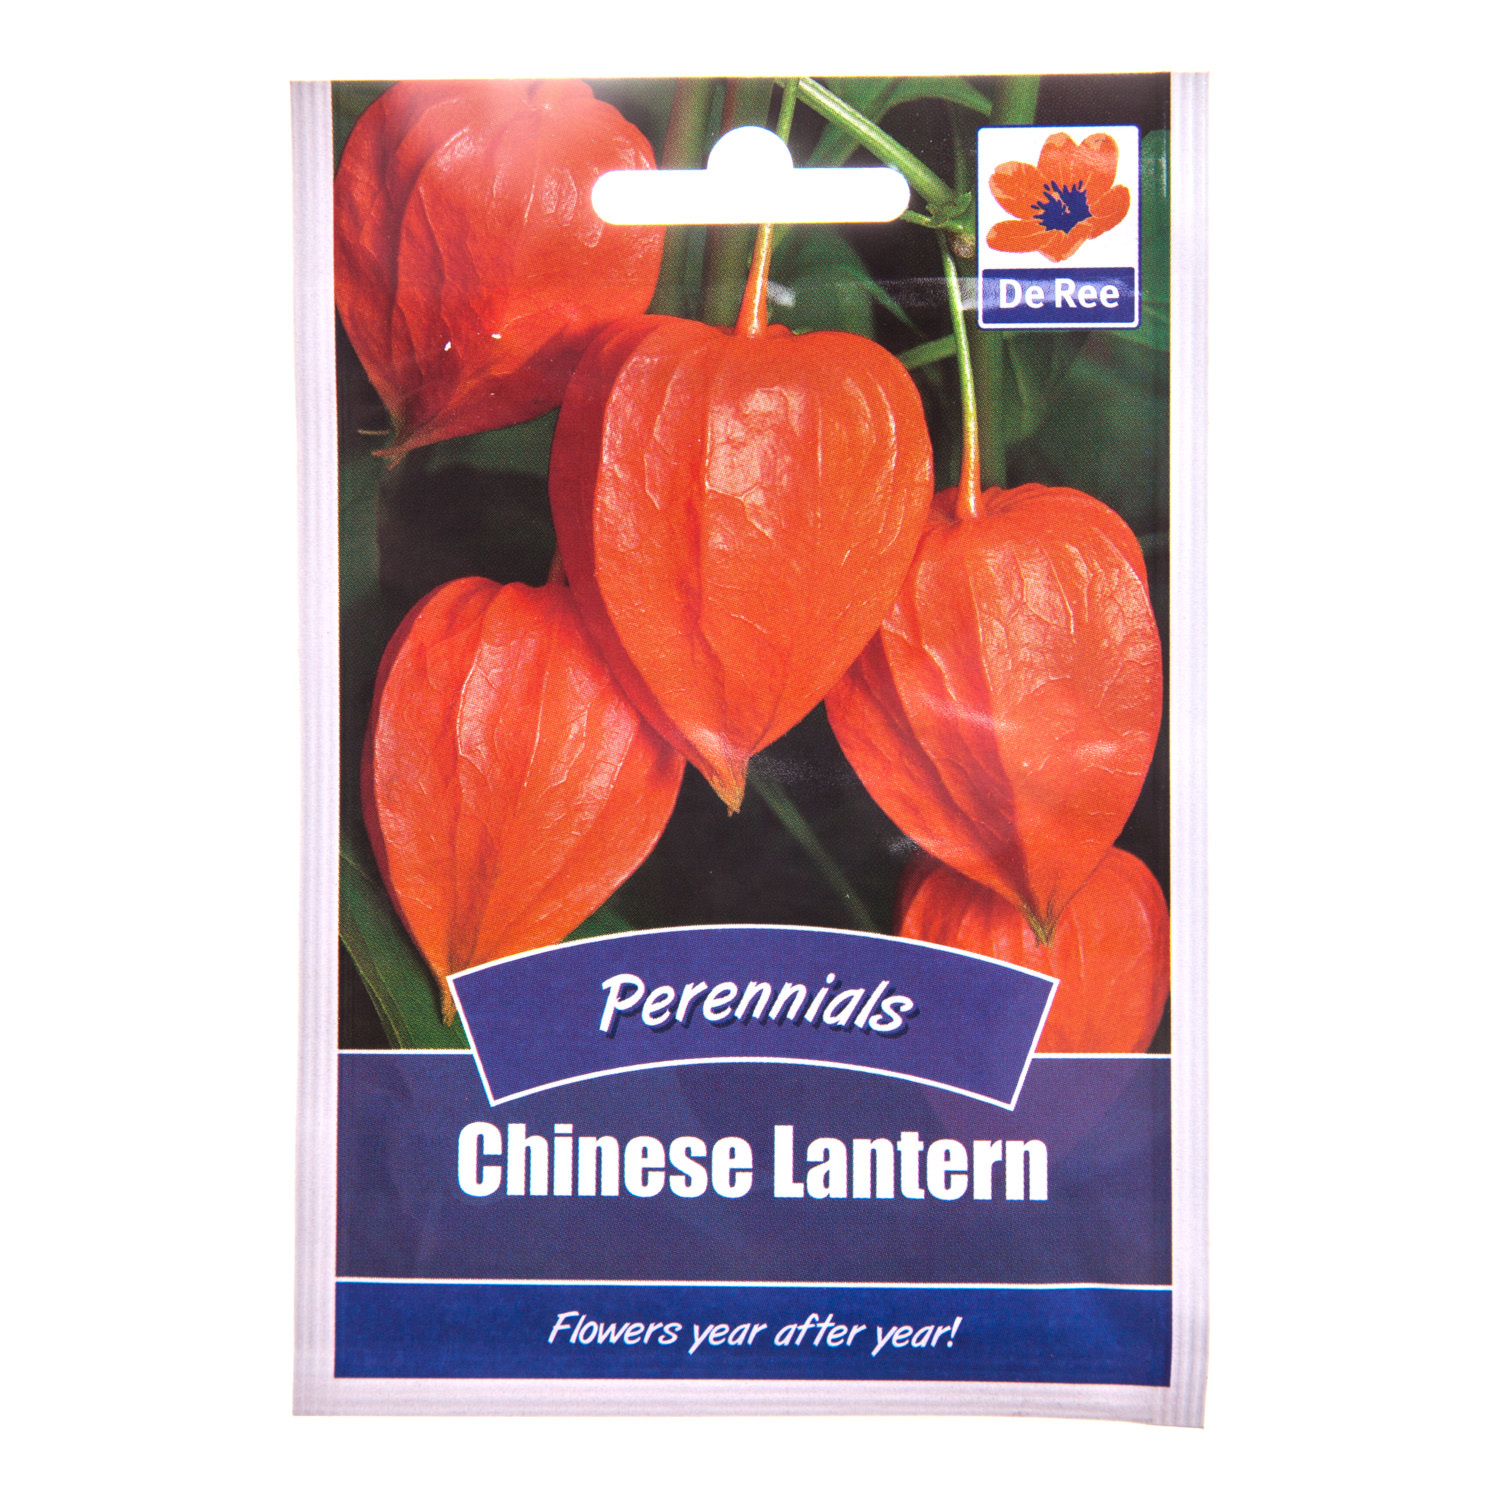 Perennial - Chinese Lantern Seeds Image